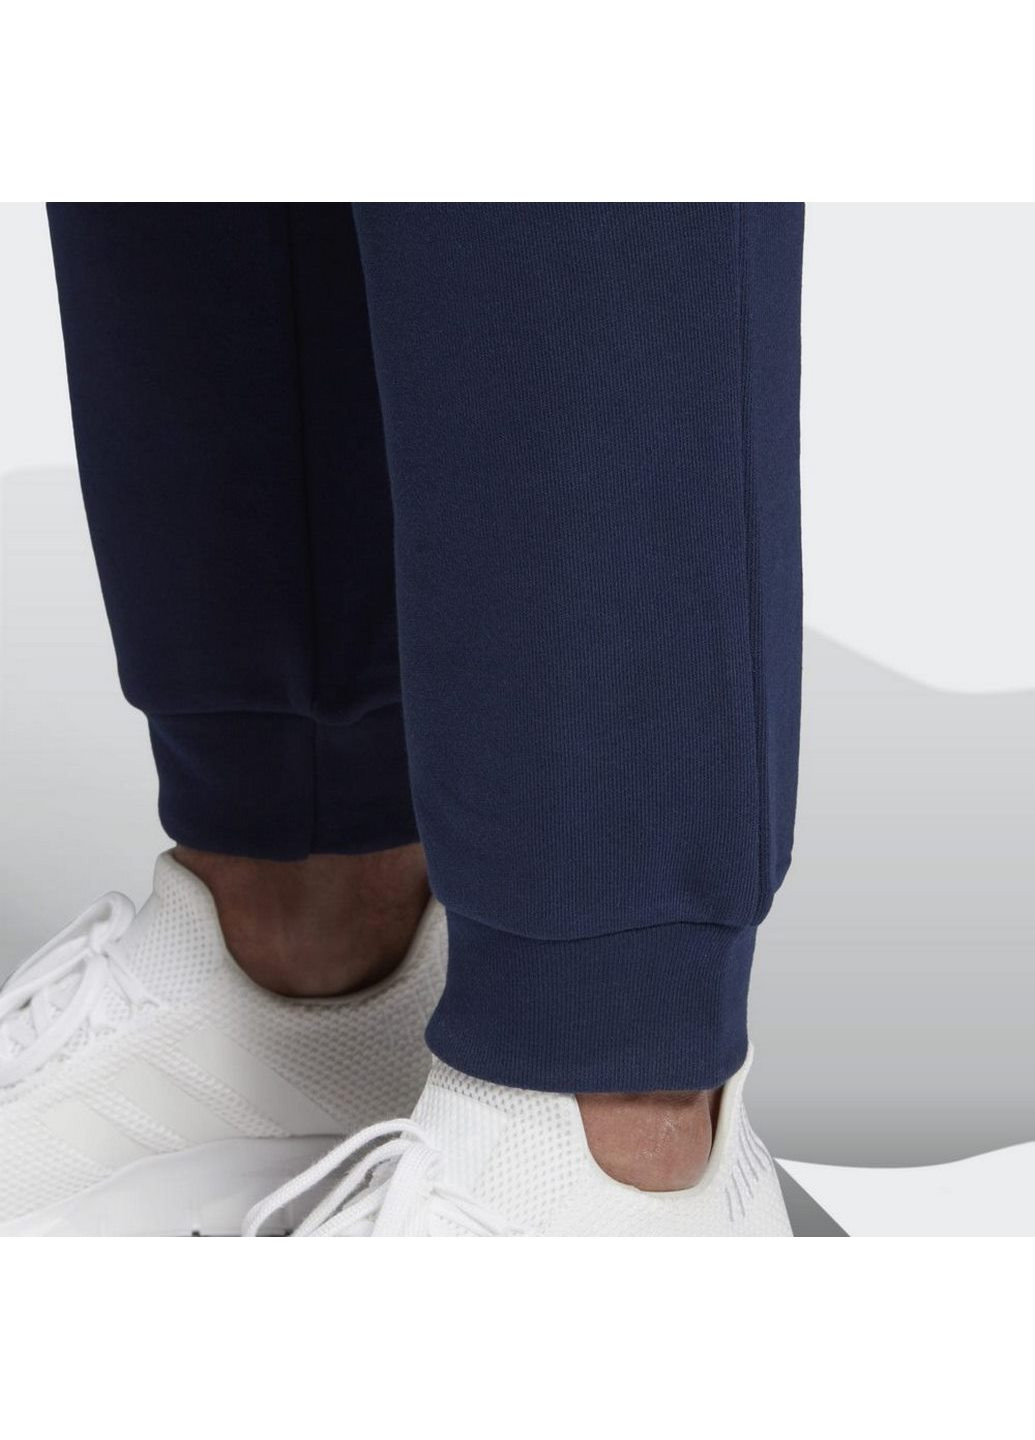 Синие спортивные зимние брюки adidas